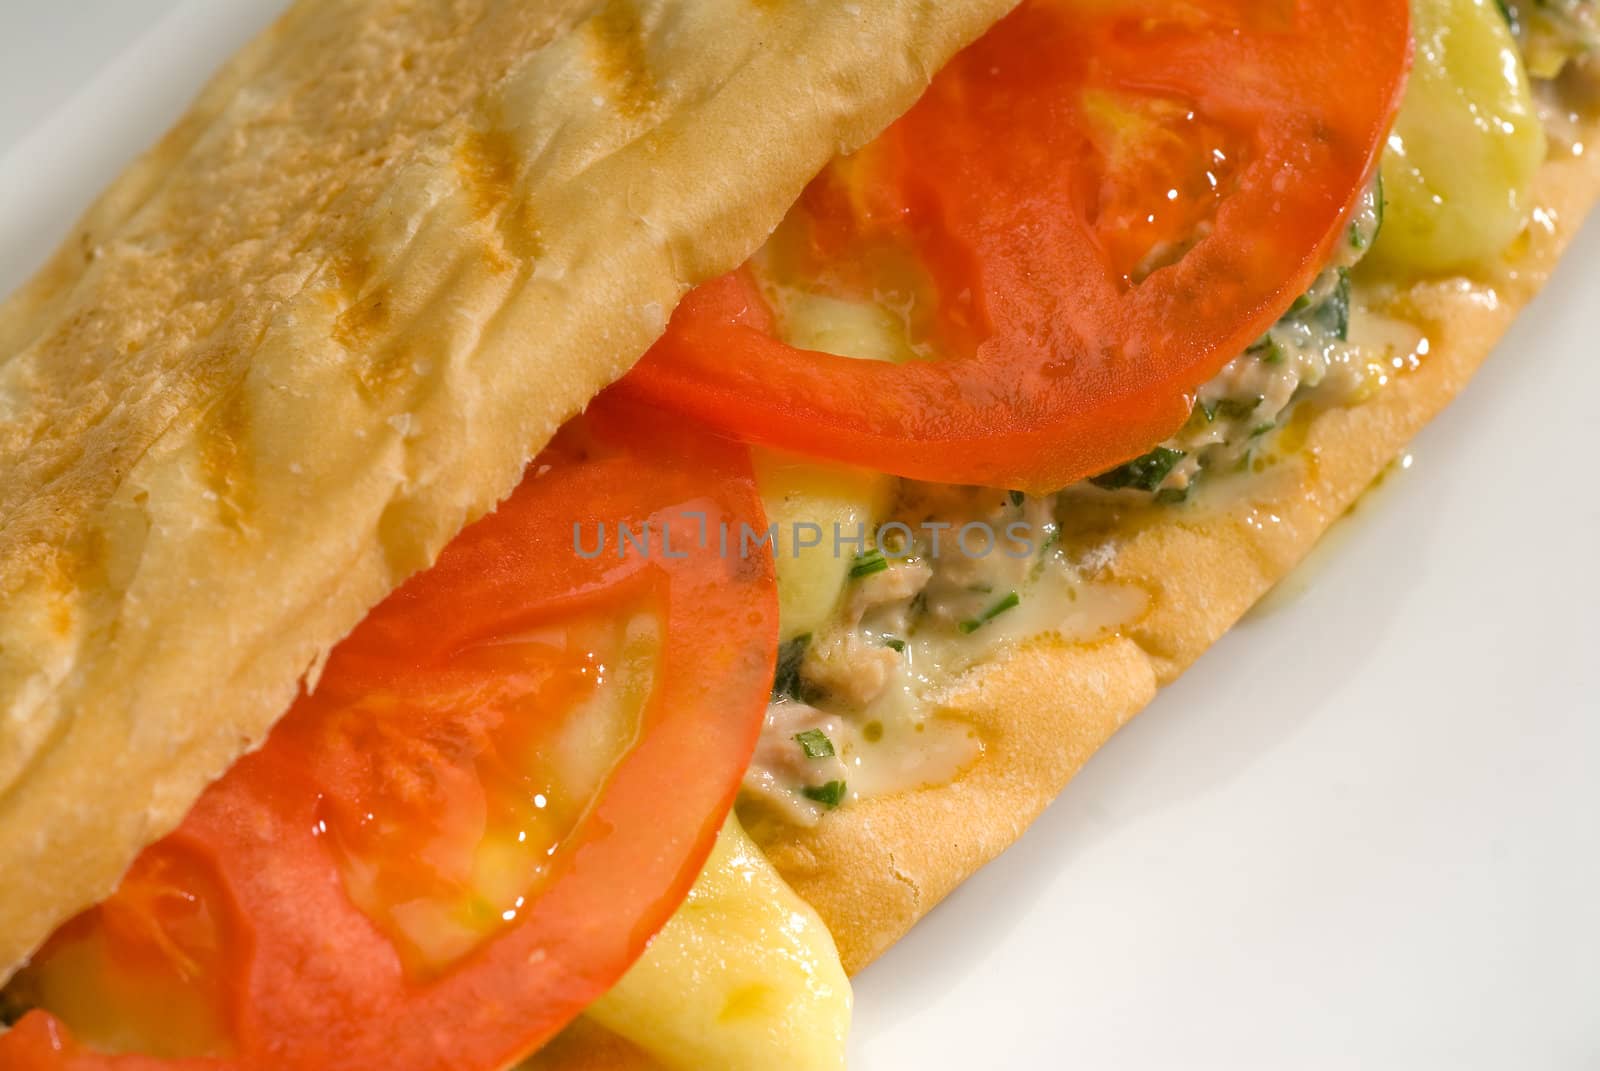 tuna tomato and cheese grilled panini sandwich by keko64